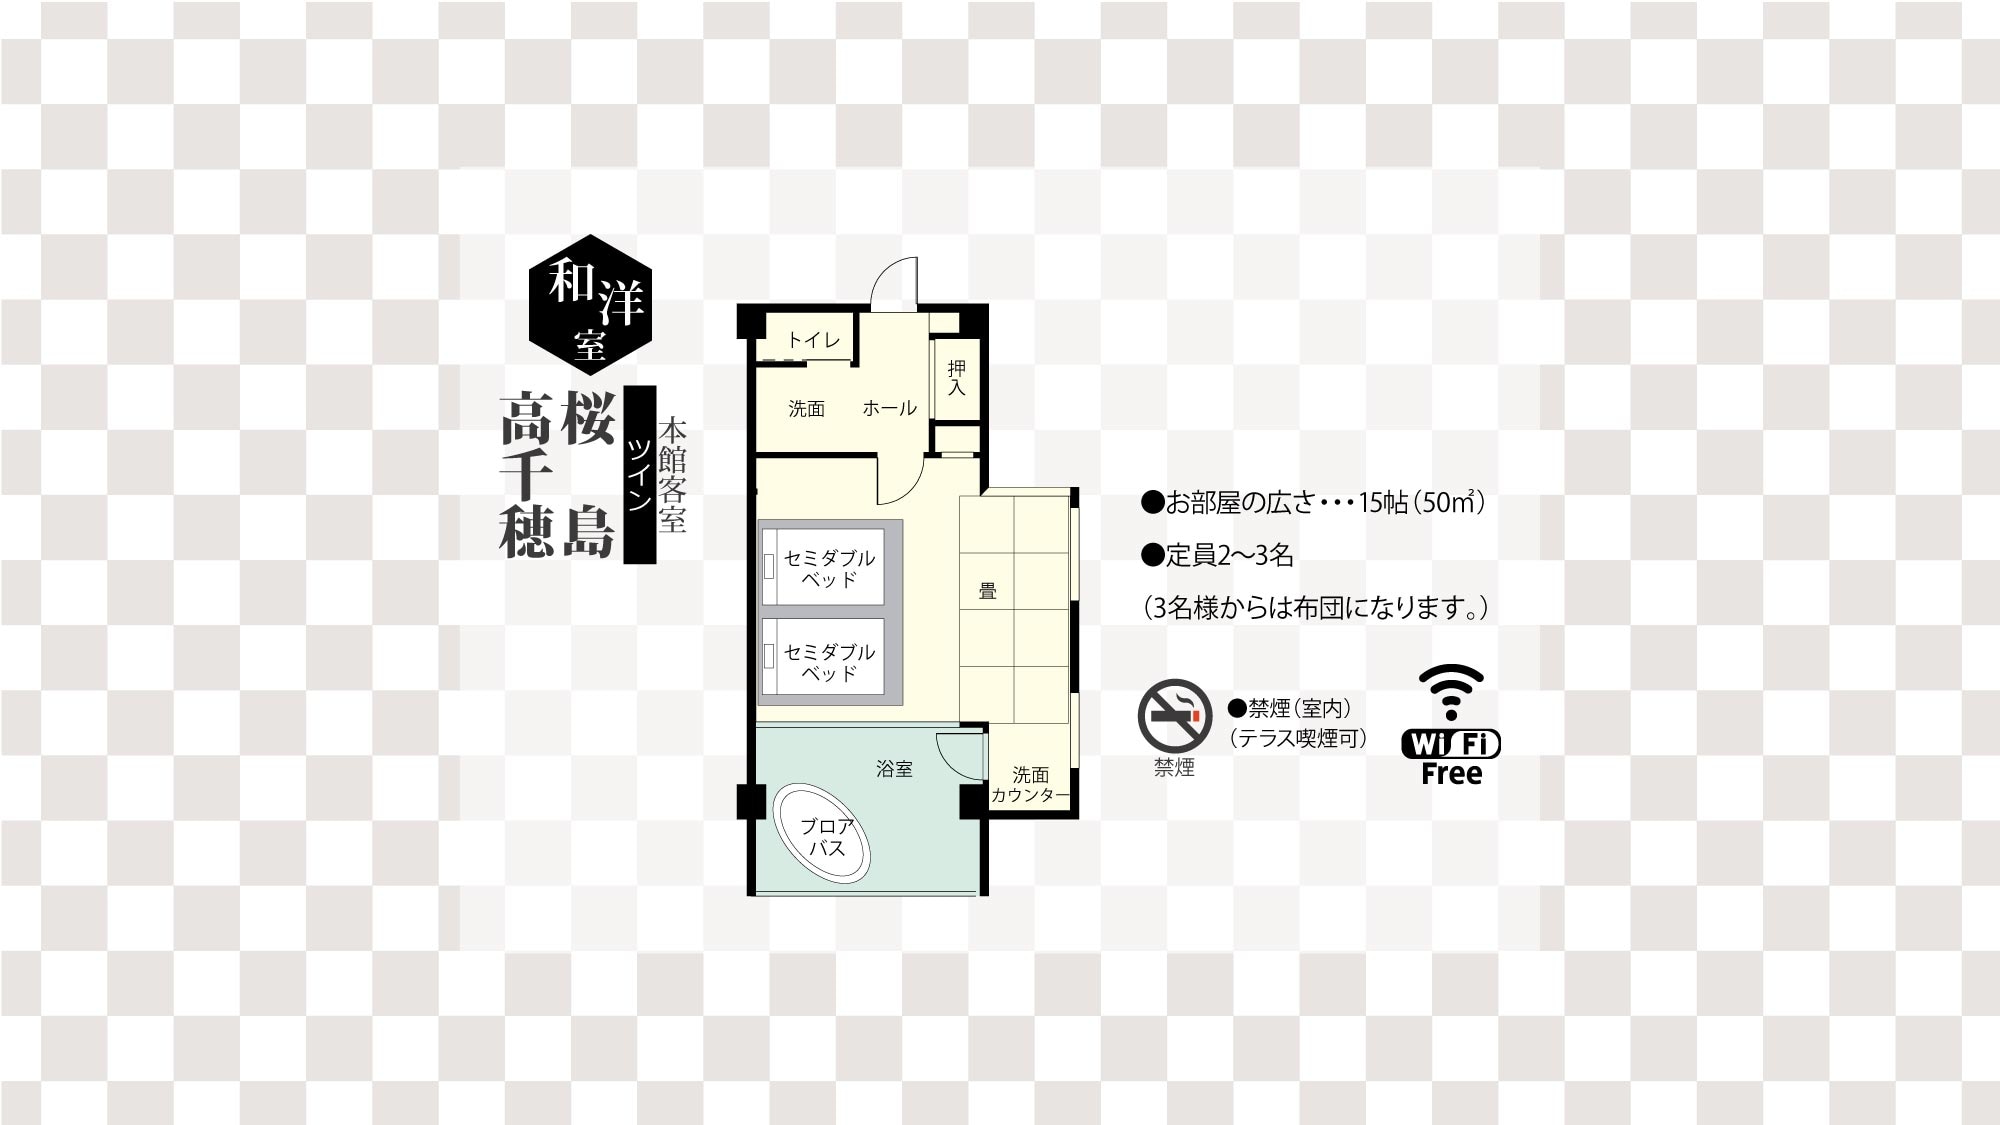  느린 세미 더블 사이즈 침대 2개를 갖춘 15첩의 노천탕이 있는 일본식 서양식 객실